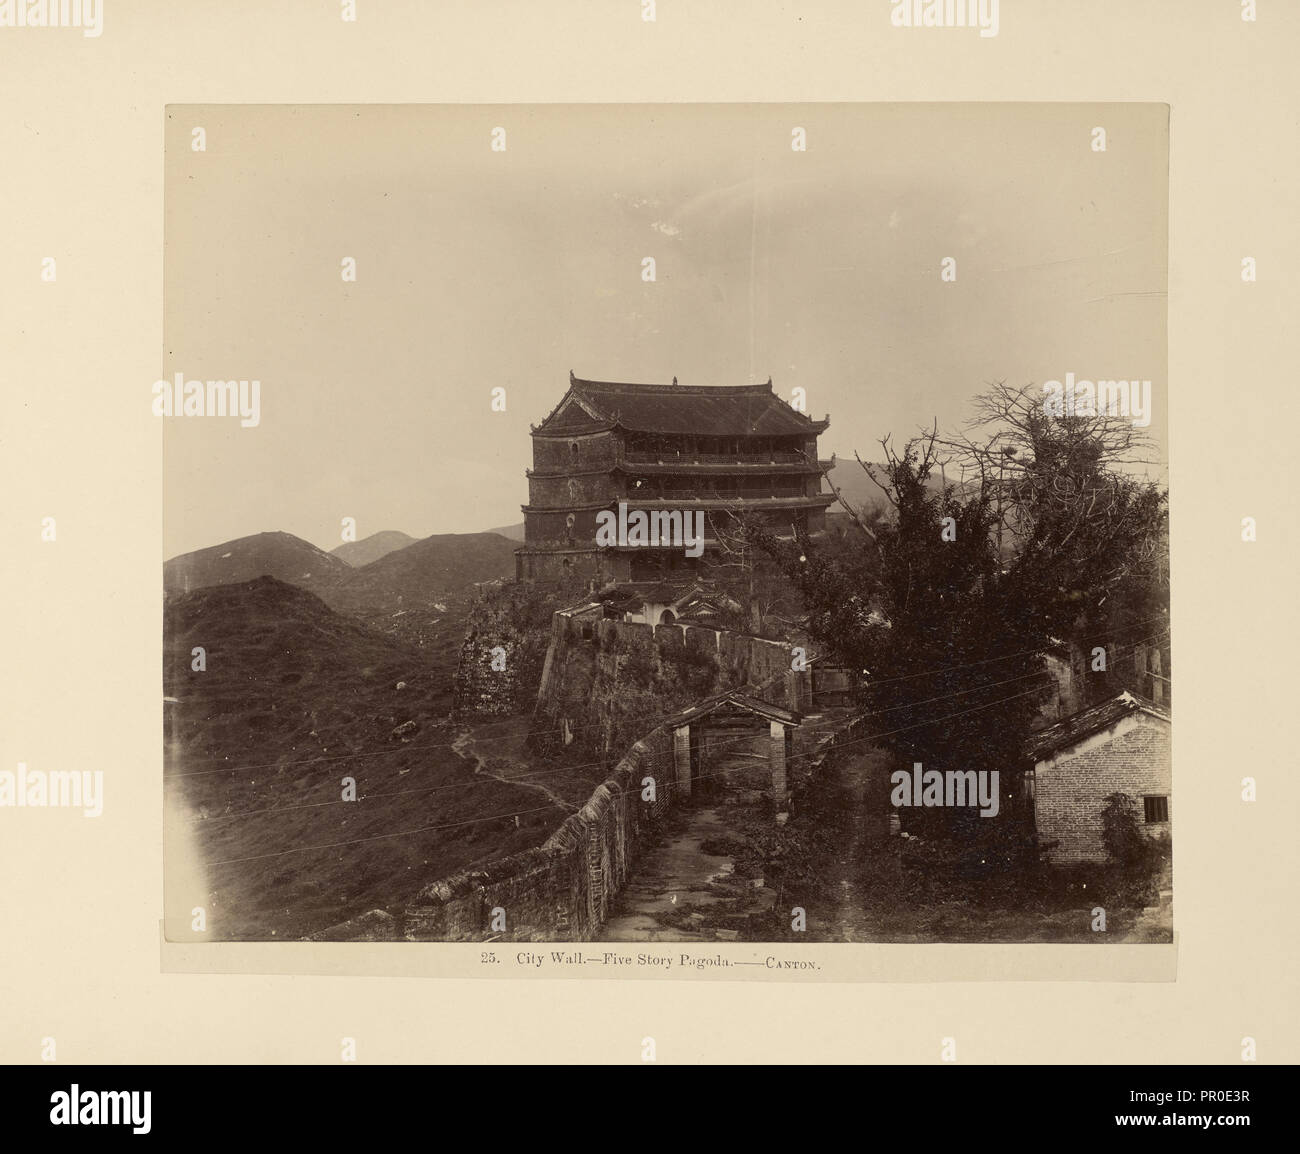 Stadtmauer. Fünfstöckige Pagode. Kanton; Unbekannte Teekocher; Guangzhou, Guangdong, China; 1870s - 1880s; Eiklar silber Drucken Stockfoto